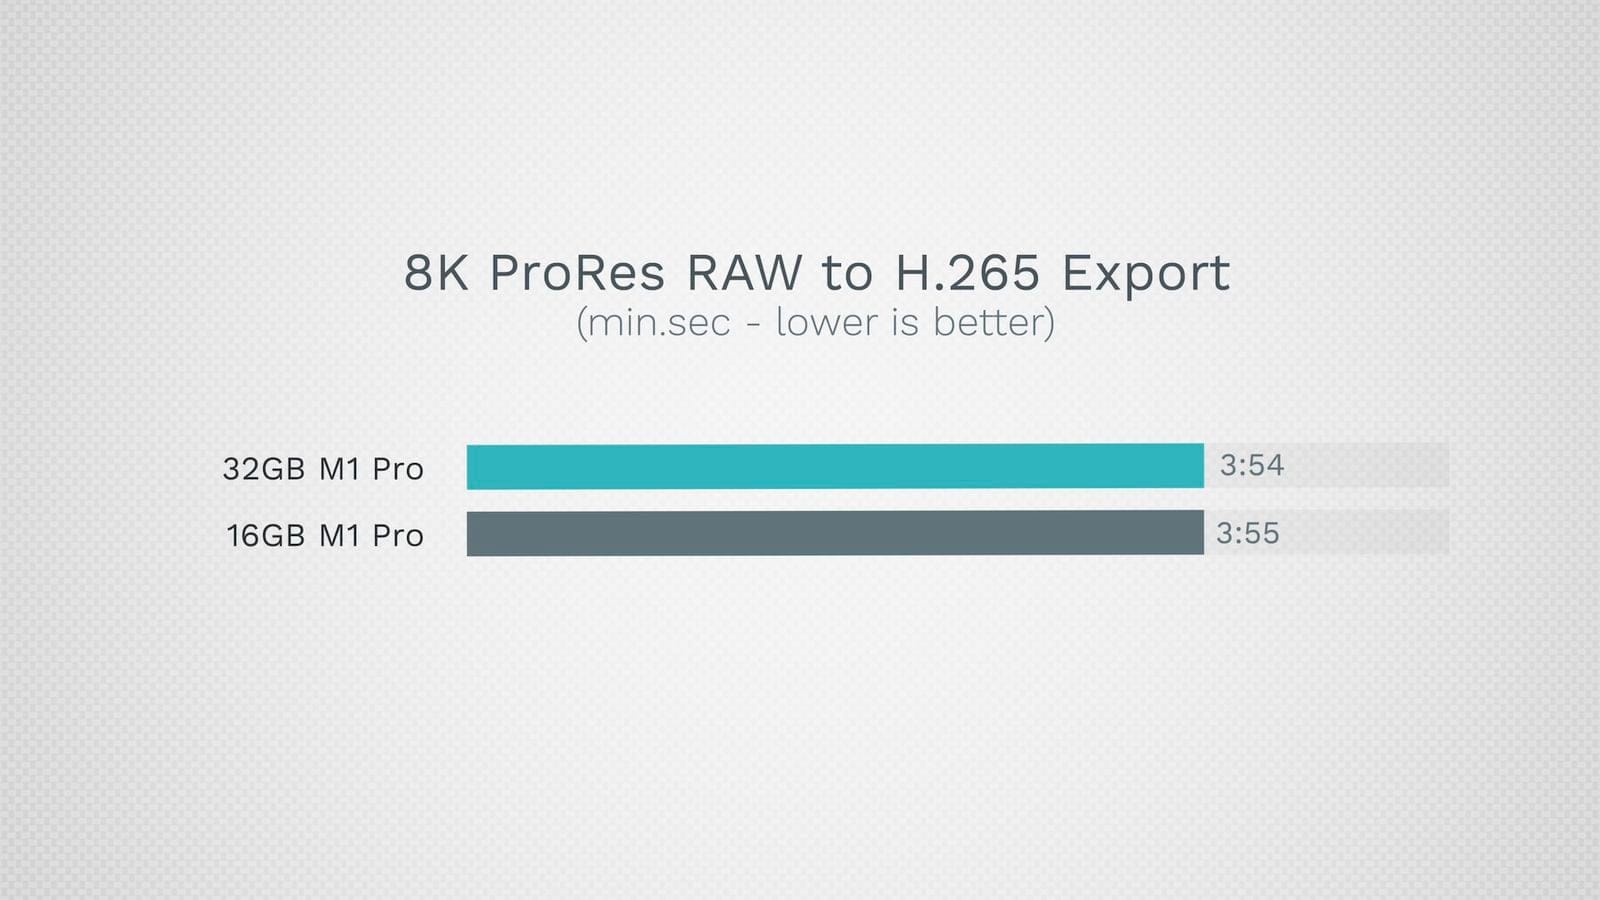 맥북프로 16GB vs 32GB 4k ProRes 성능 차이